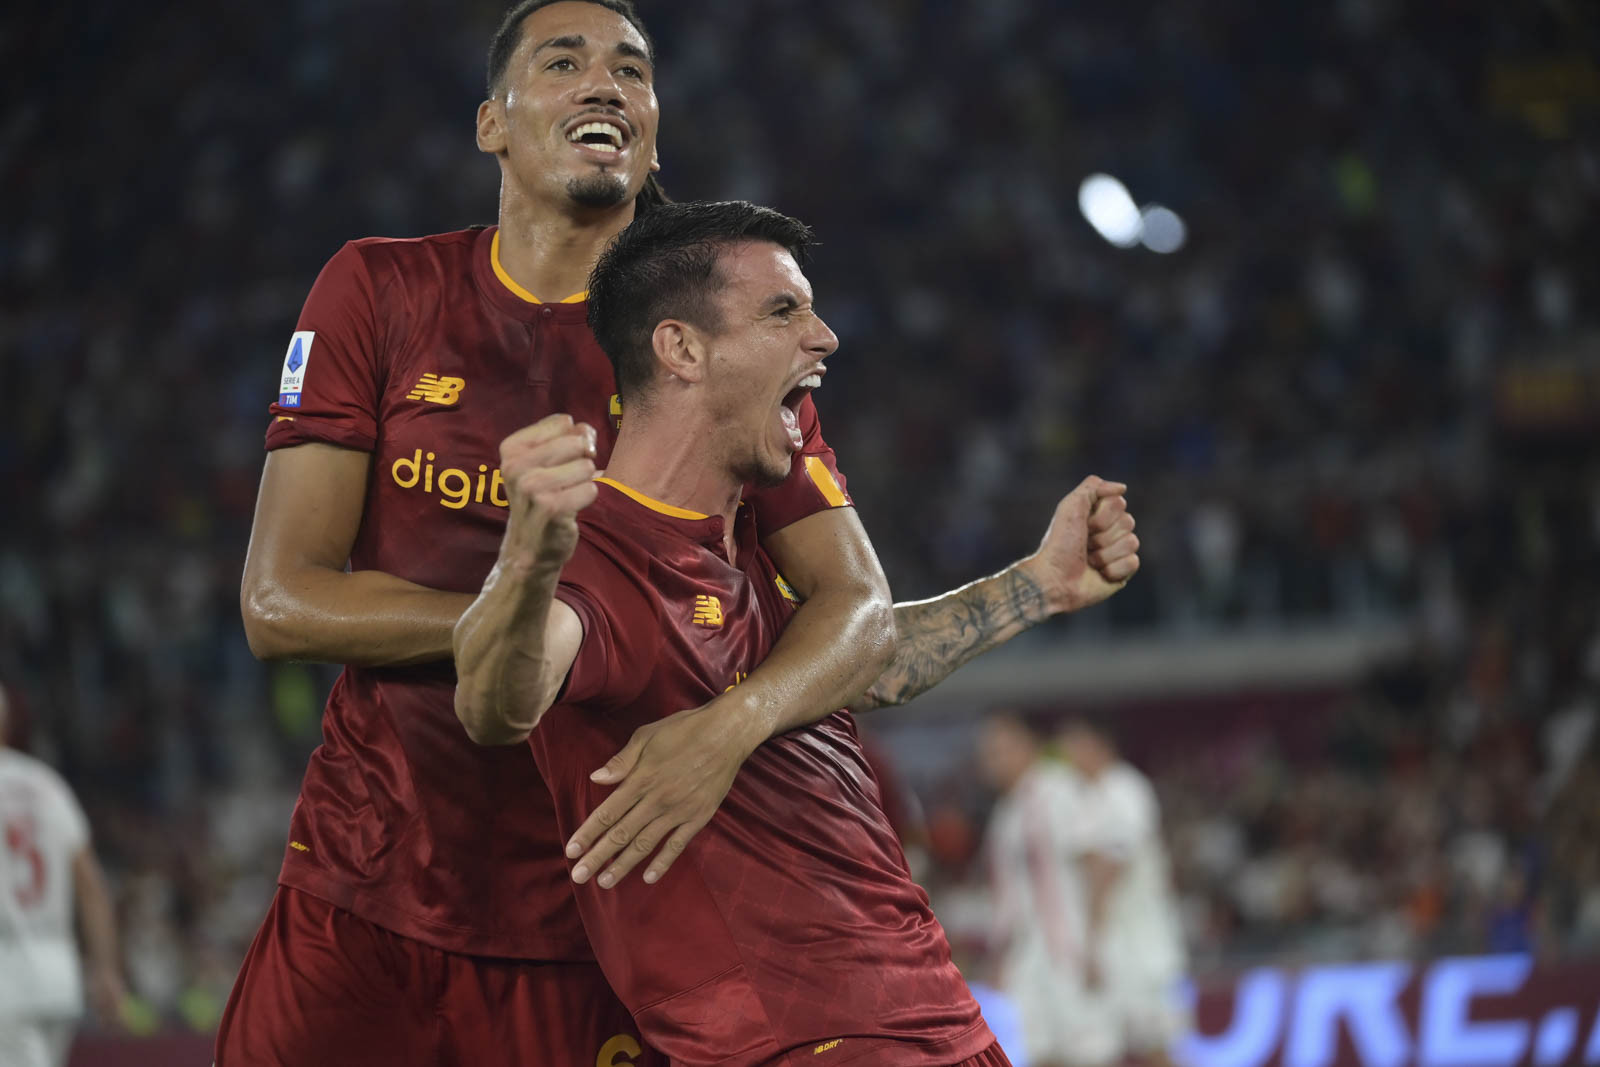 Với 3 chiến thắng cùng một trận hòa, AS Roma vươn lên chiếm ngôi đầu trên bảng xếp hạng Serie A với 10 điểm